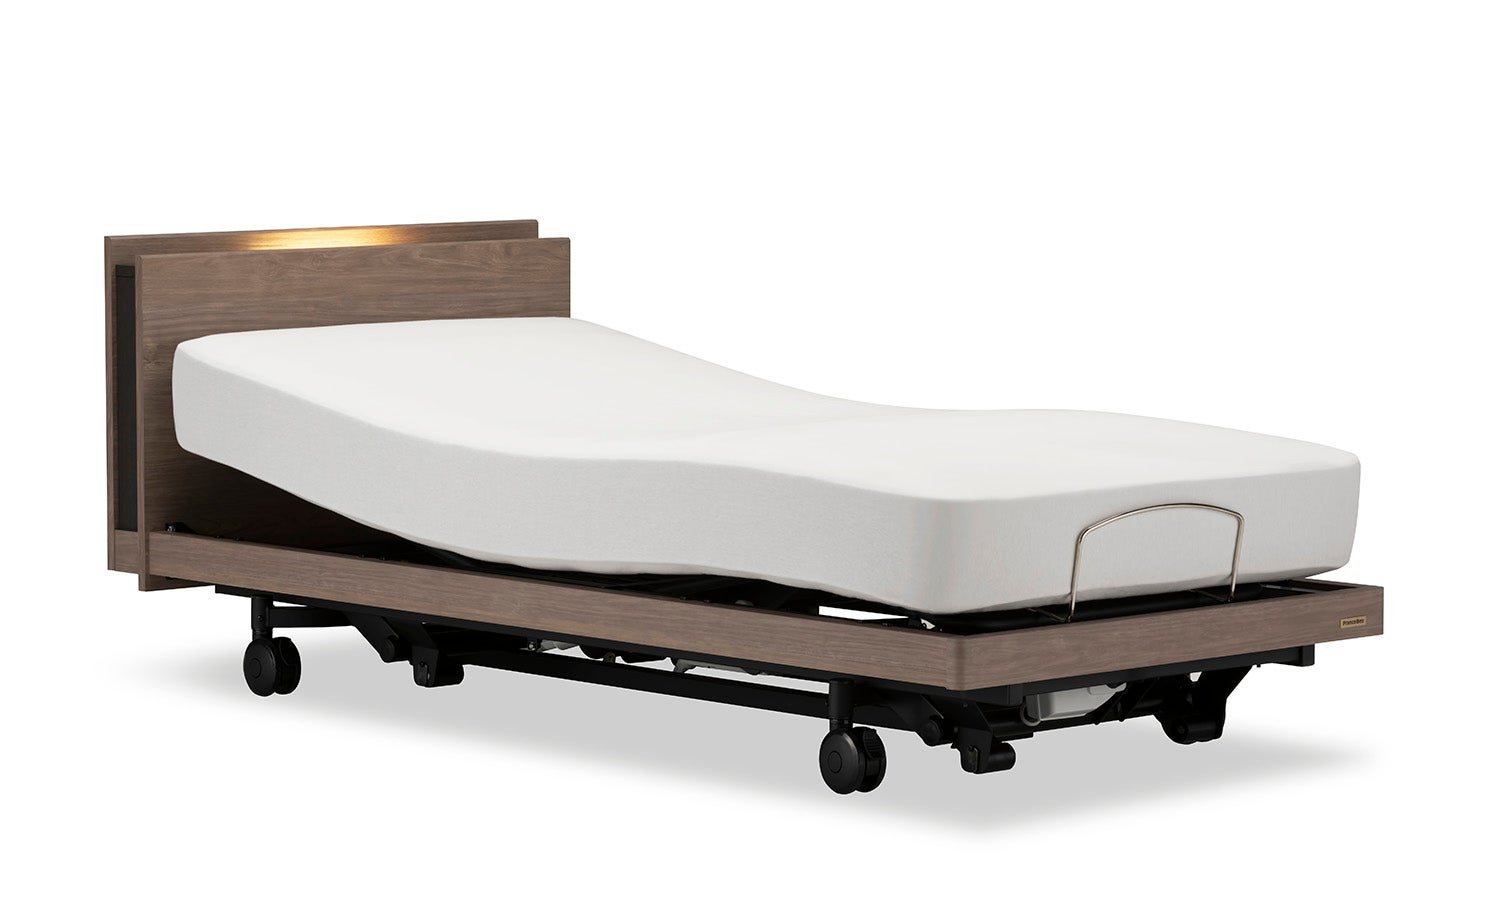 『グランサス』
インテリアに馴染む高いデザイン性と機能性を両立した本格電動リクライニングベッド